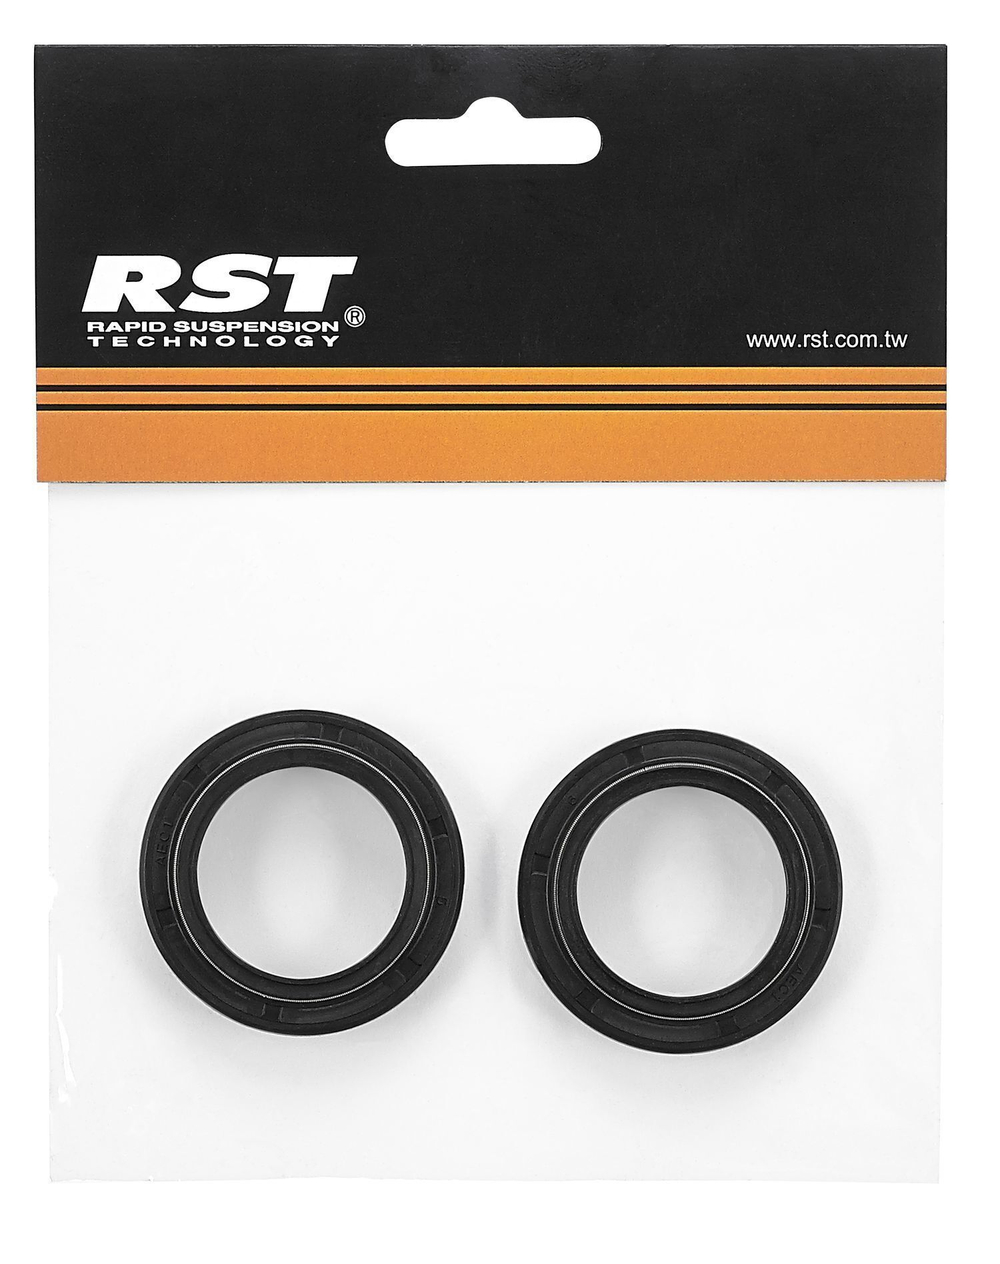 Запчасти для амортизационной вилки RST пыльники 36 мм для R1/STORM/SPACE (пара) резина черн. RST